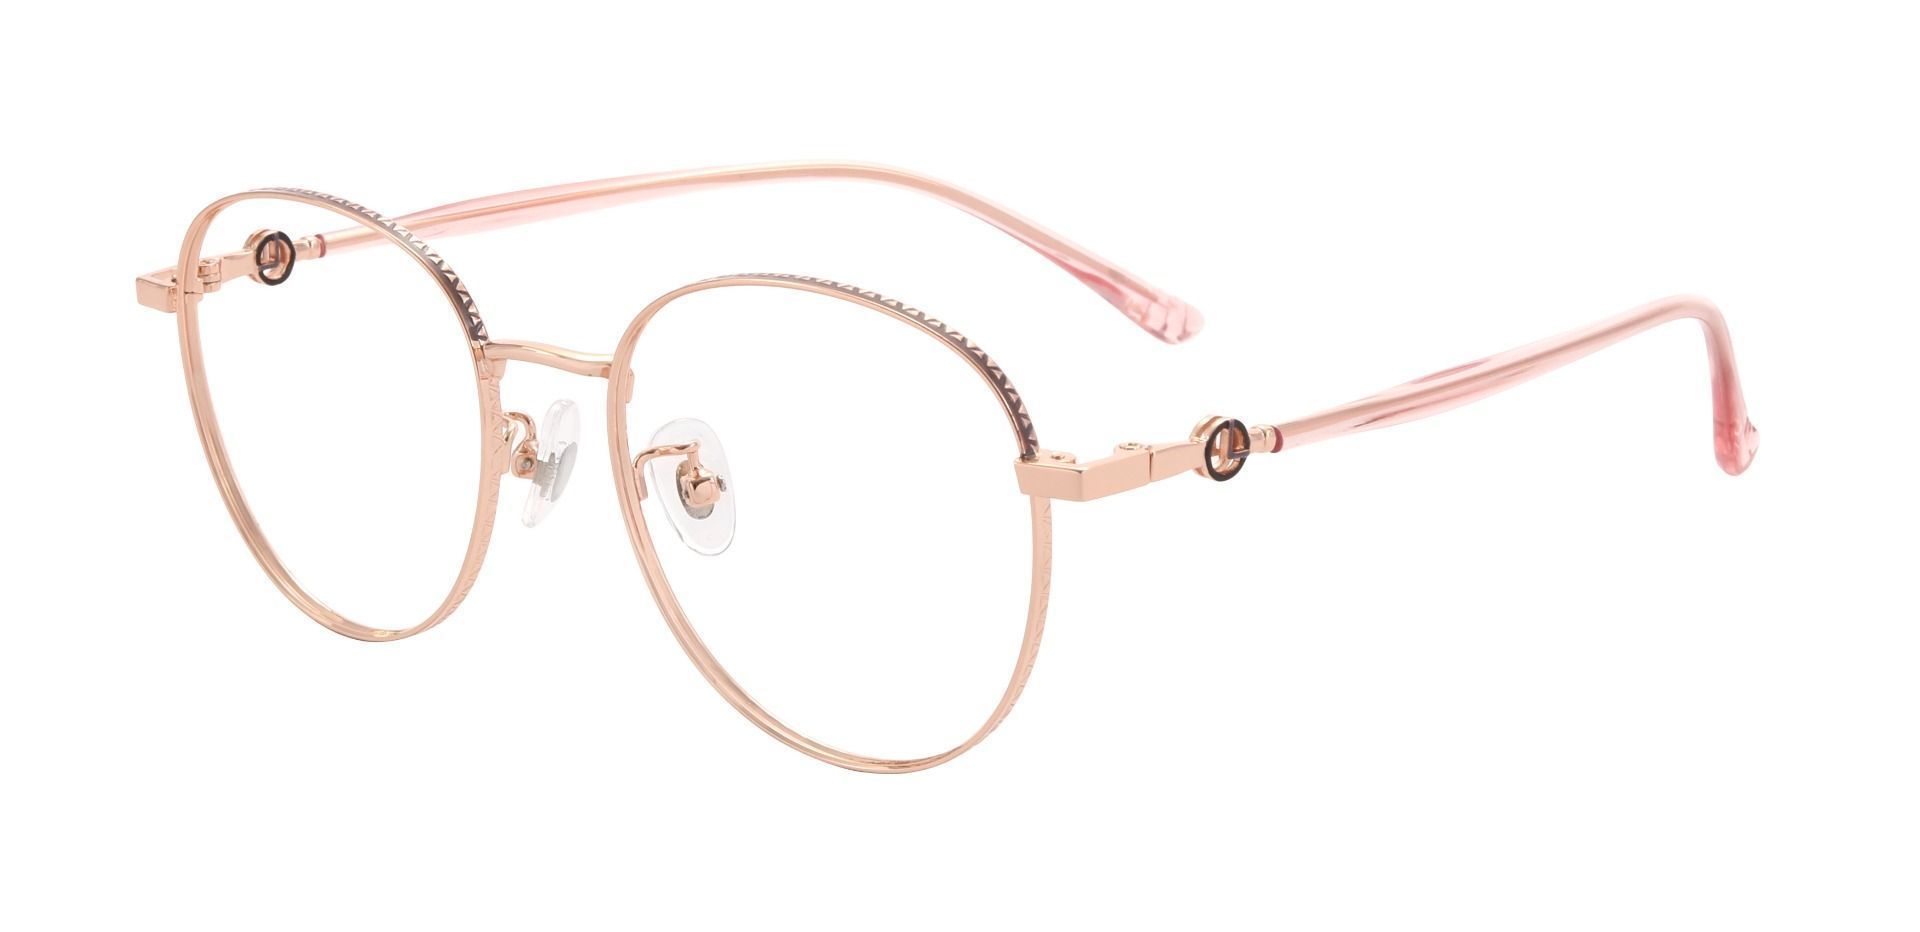 Imelda Round Prescription Glasses - Rose Gold | Women's Eyeglasses ...